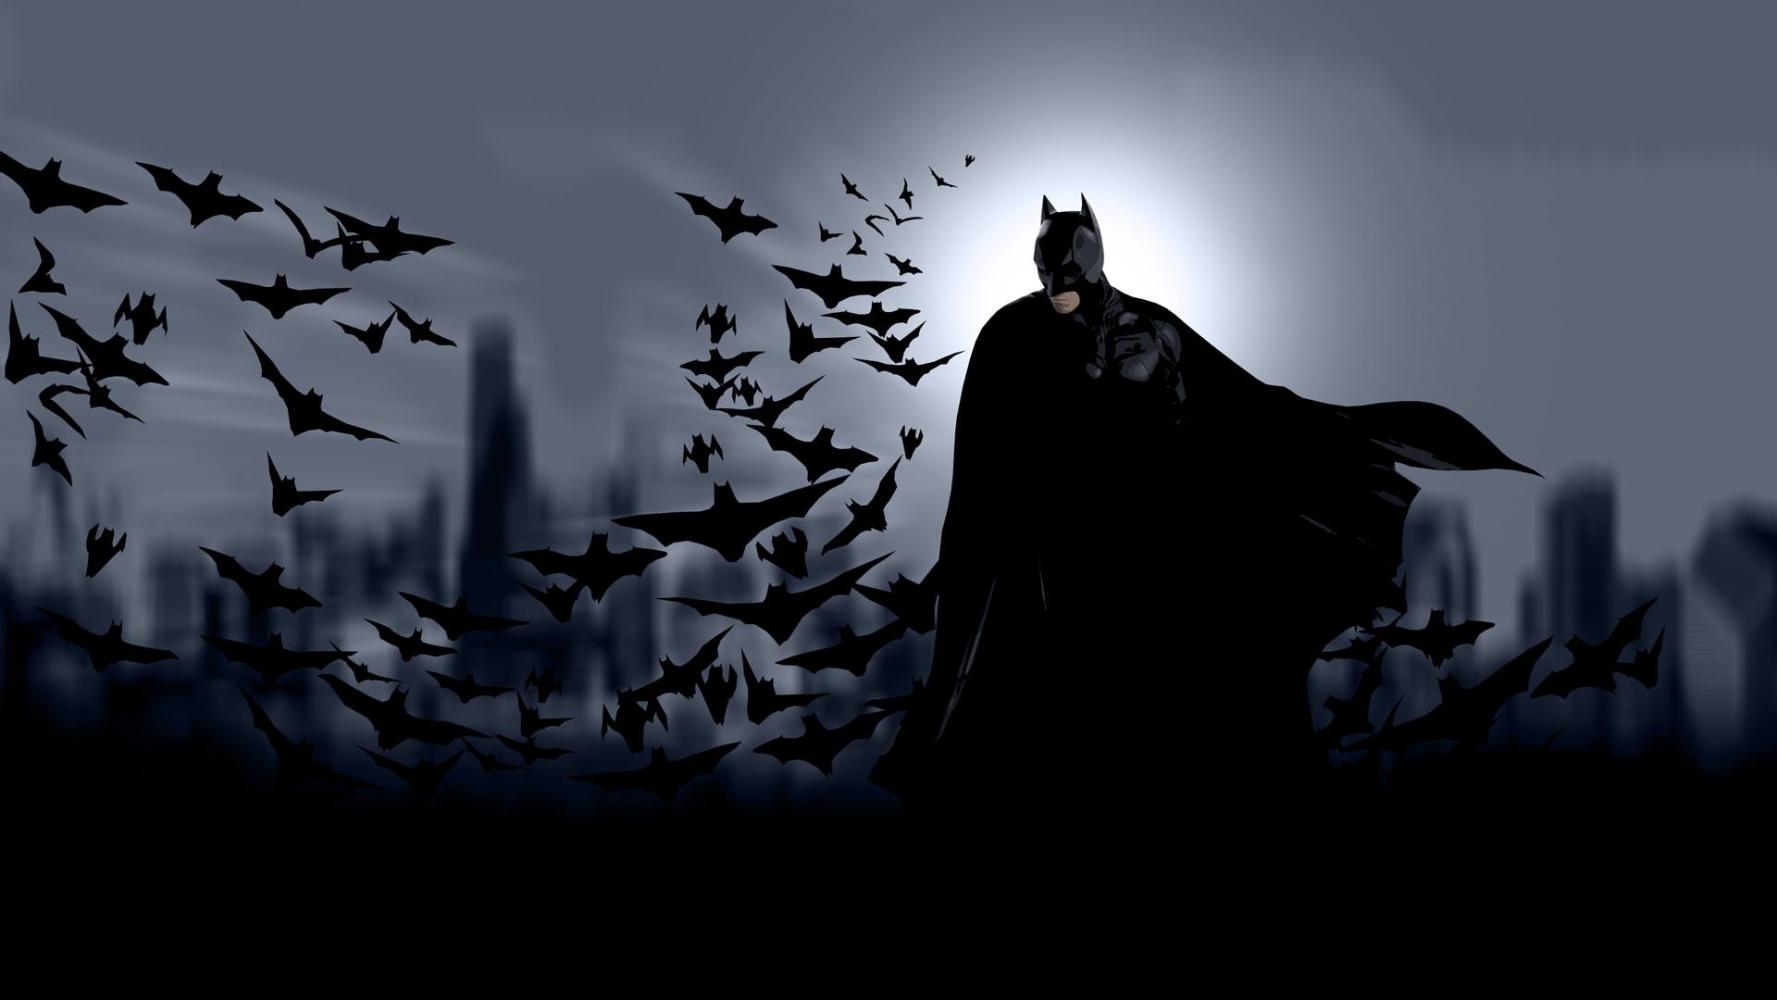 黑化大超x蝙蝠侠图片